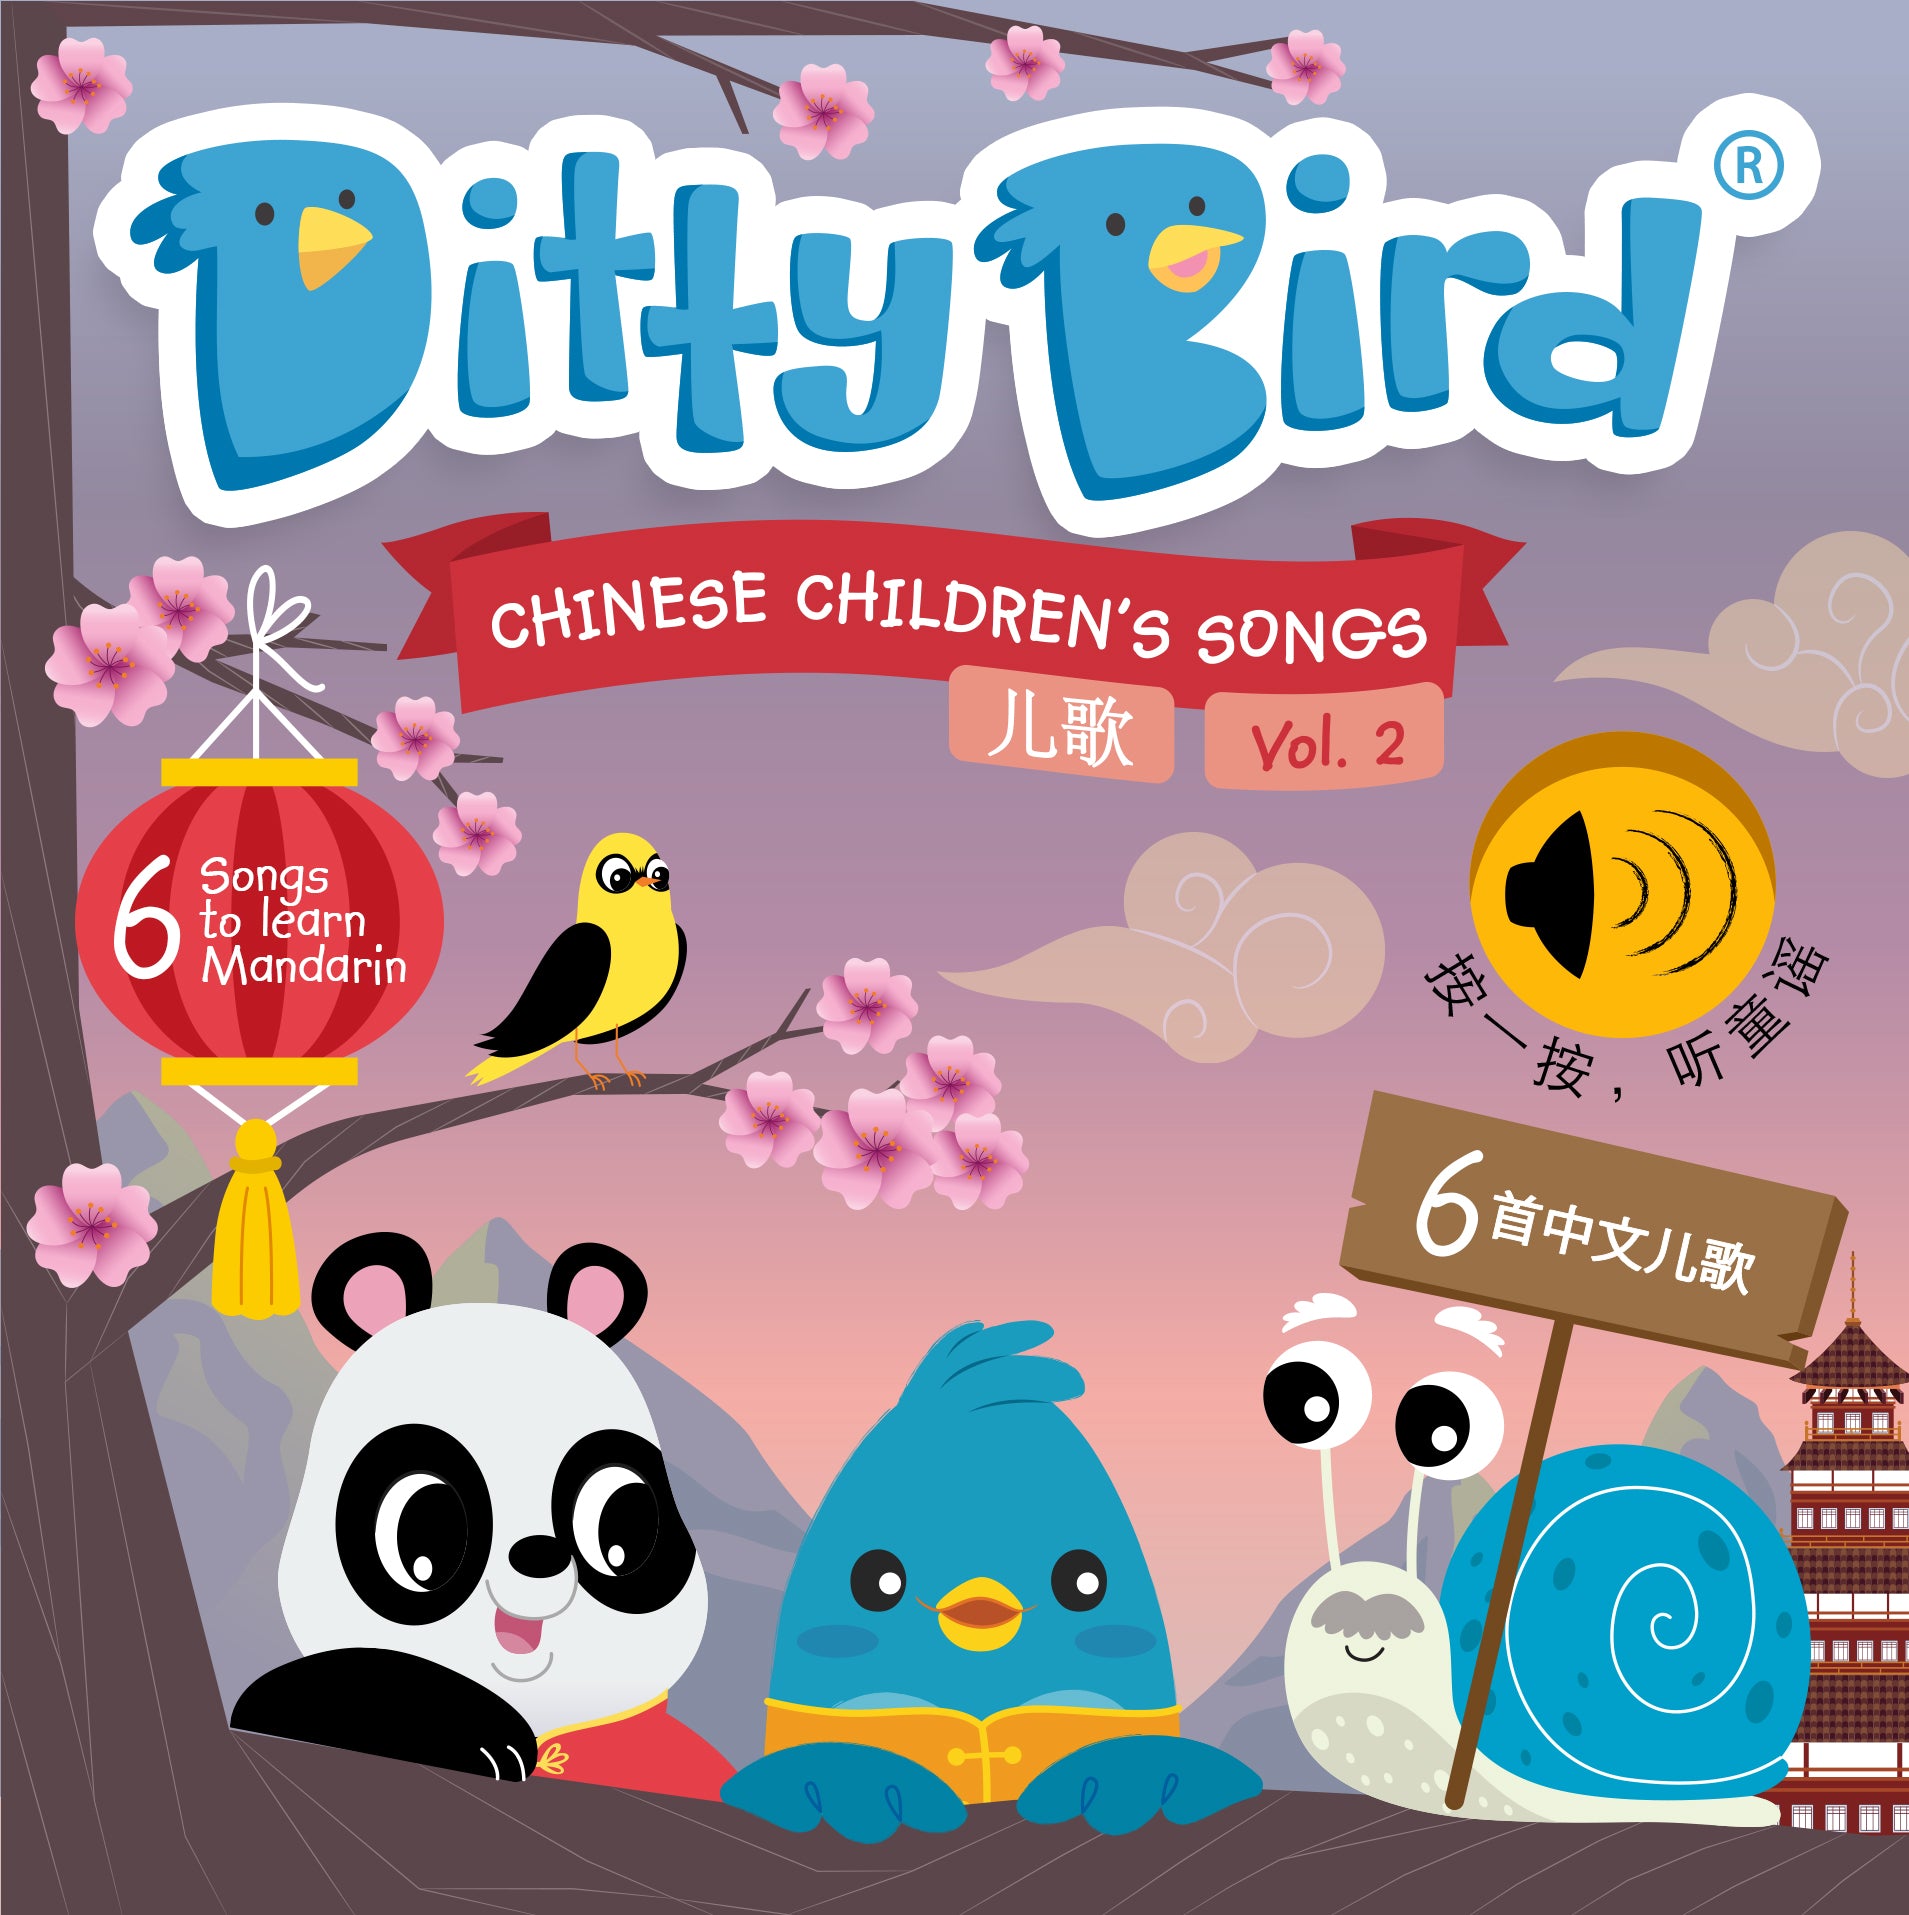 NEW! DITTY BIRD: Chinese Children's Songs in Mandarin Vol. 2